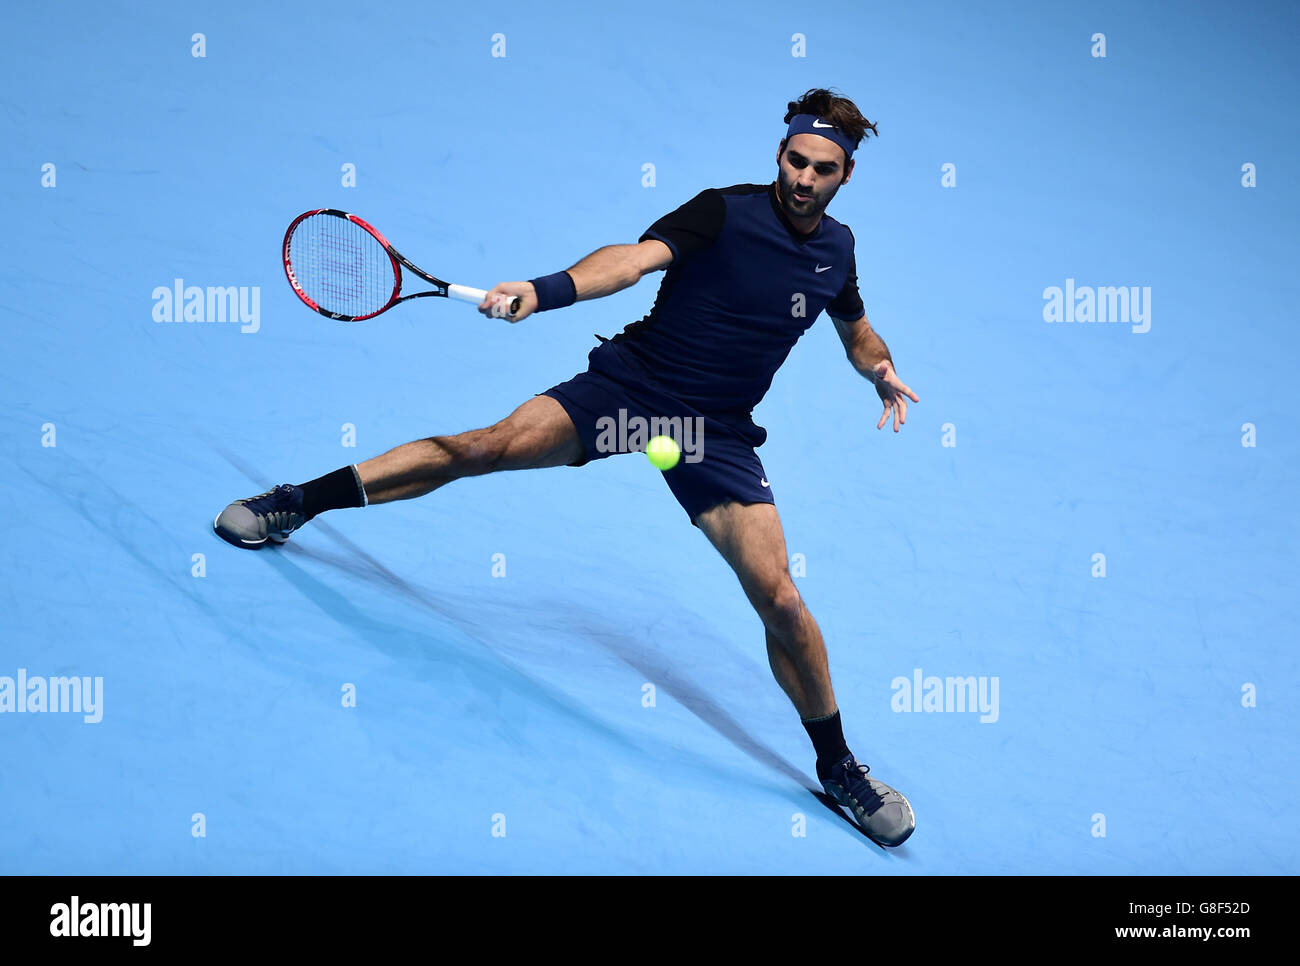 Roger Federer de Suisse lors de la finale de la finale du World Tour ATP à l'O2 Arena, Londres. APPUYEZ SUR ASSSOCIATION photo. Date de la photo: Dimanche 22 novembre 2015. Voir PA Story TENNIS Londres. Le crédit photo devrait se lire comme suit : Adam Davy/PA Wire. RESTRICTIONS: , aucune utilisation commerciale sans autorisation préalable, veuillez contacter PA Images pour plus d'informations: Tel: +44 (0) 115 8447447. Banque D'Images